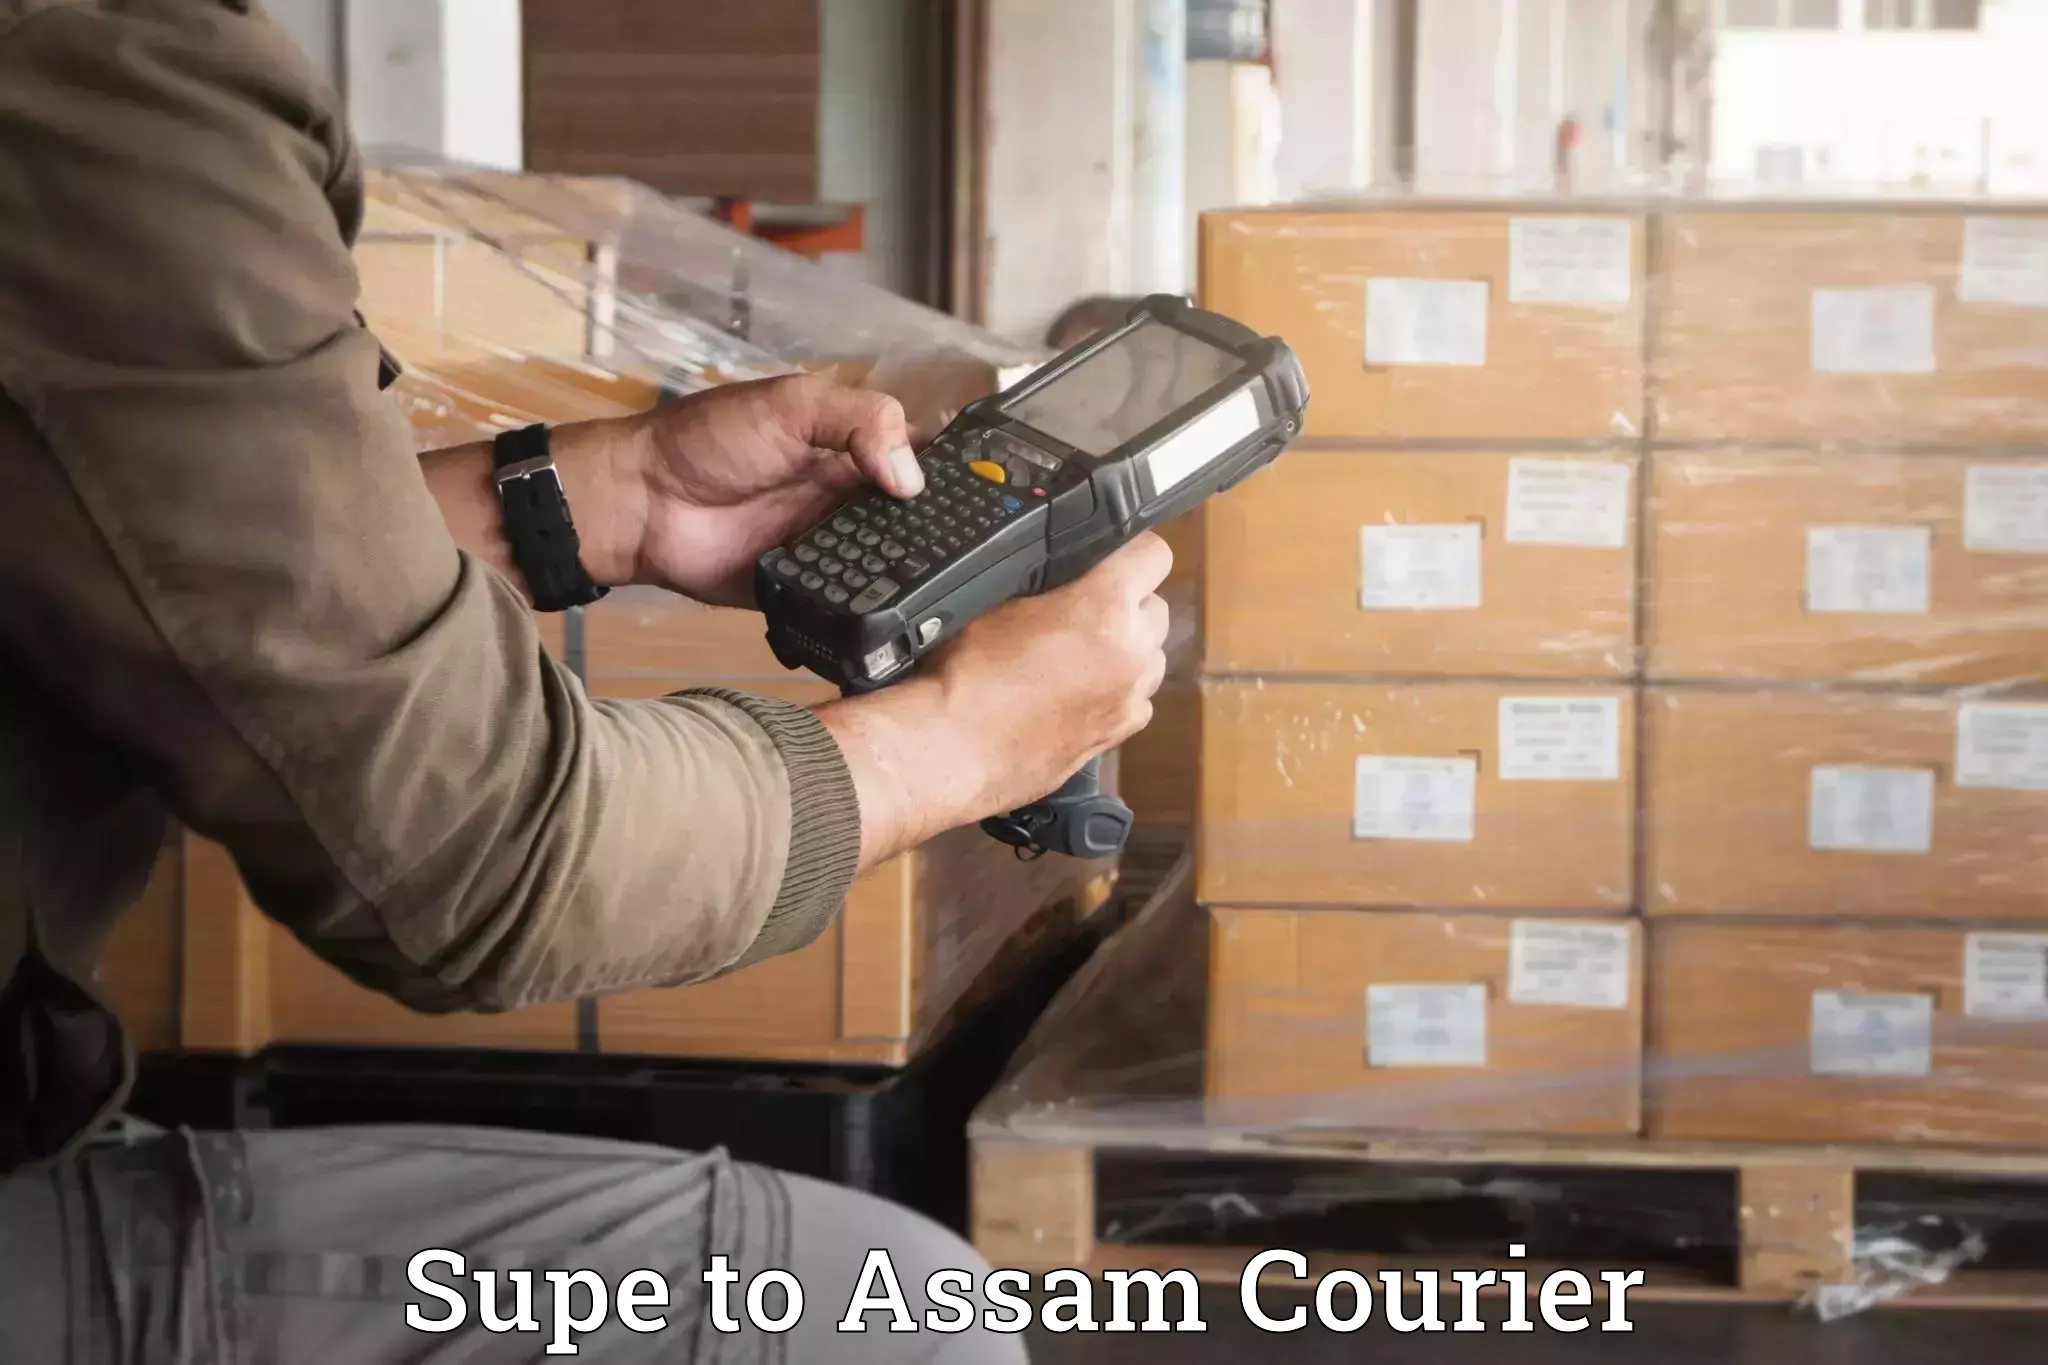 Luggage delivery optimization Supe to Baksha Bodoland